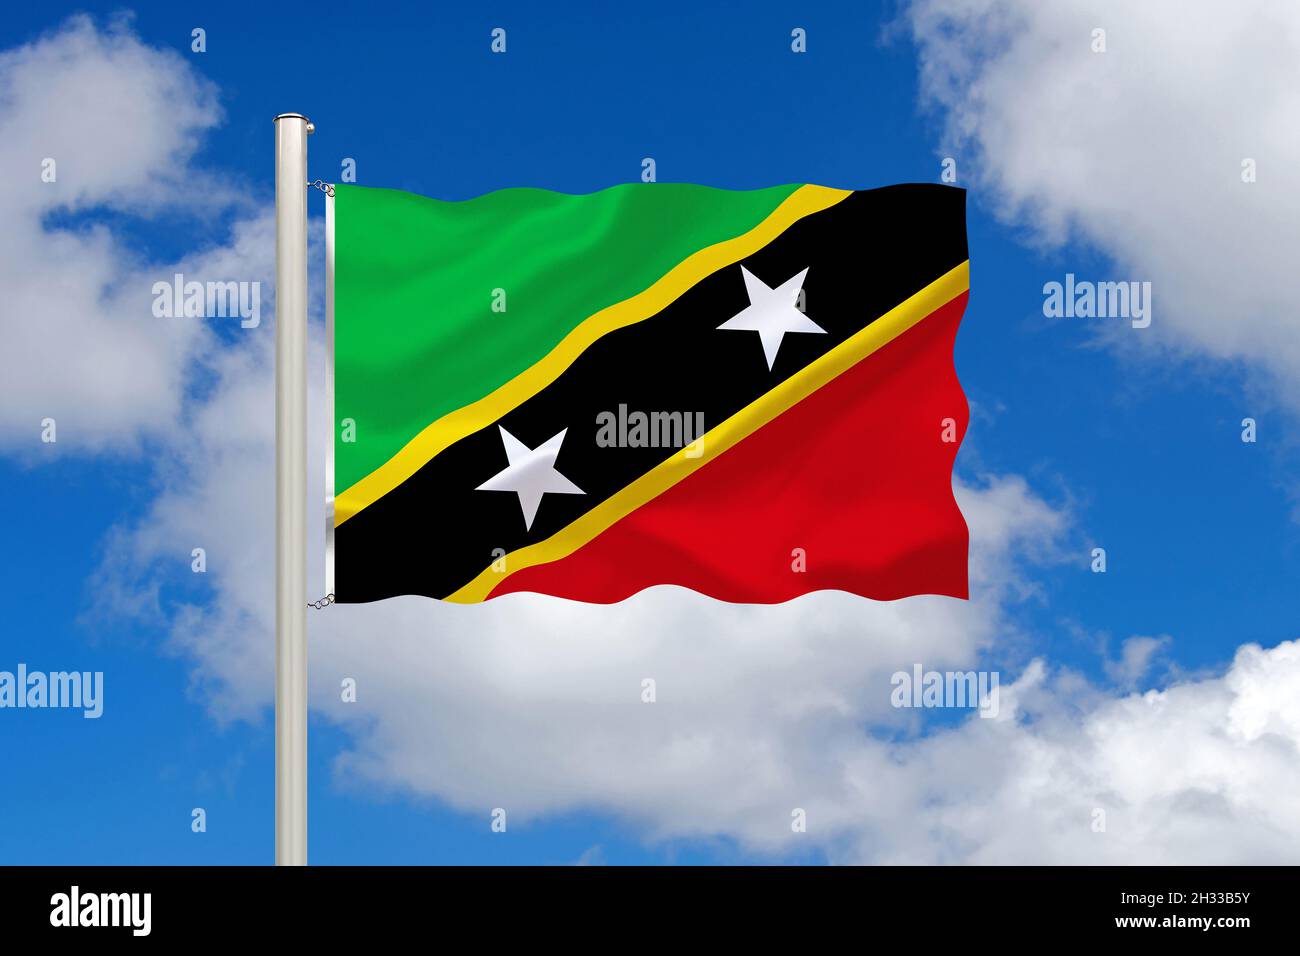 Die Flagge von St. Kitts und Nevis, Inselstaat, Karibik, gehört zu den Kleinen Antillen, Inseln, Stock Photo